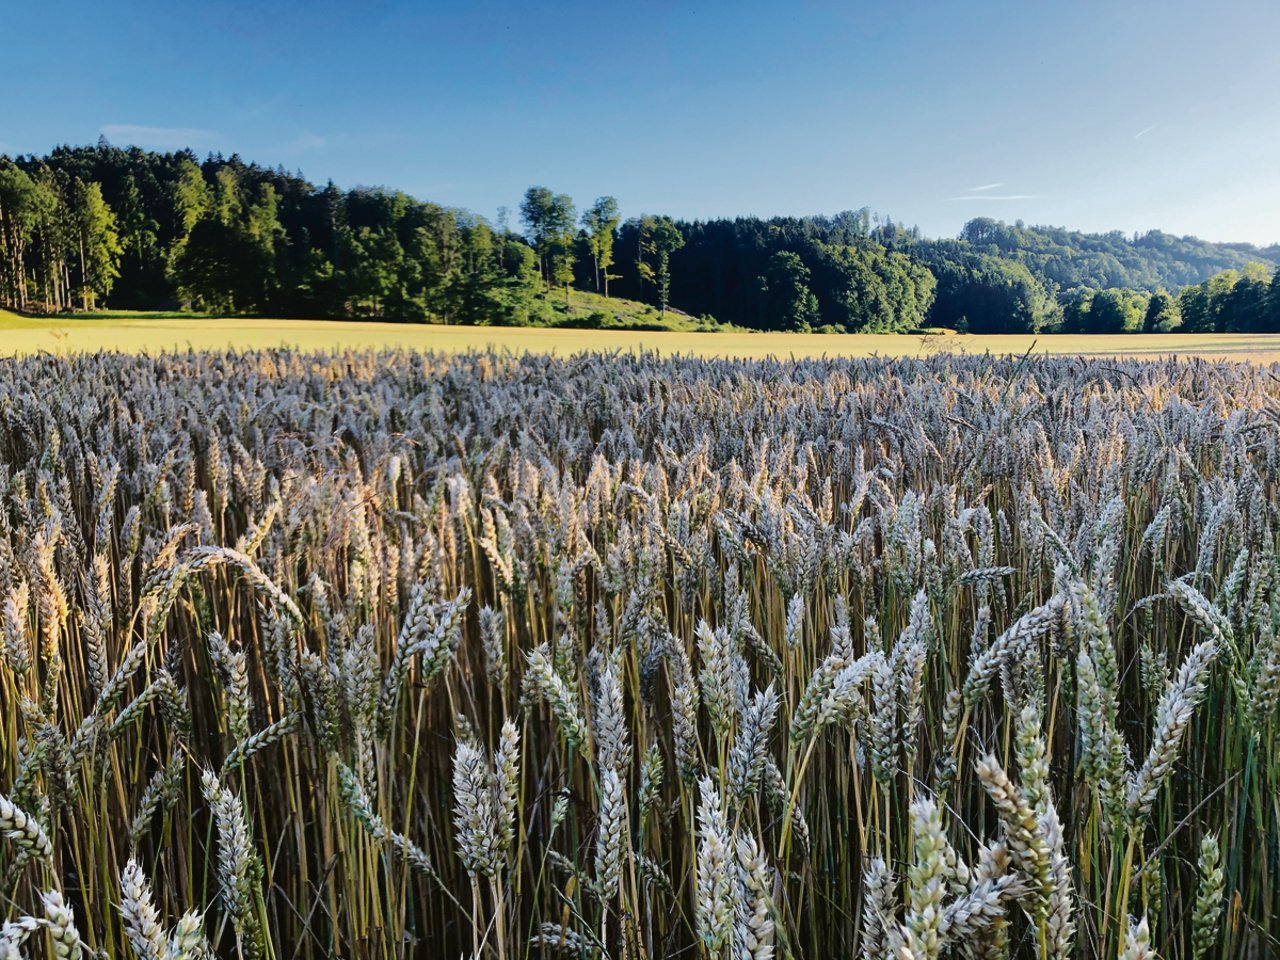 Während die Bedingungen für den Weizen im Jahresverlauf teilweise nicht einfach waren, konnte die Ernte grösstenteils bei guten Wetterverhältnissen erfolgen. (Bild Livio Janett)